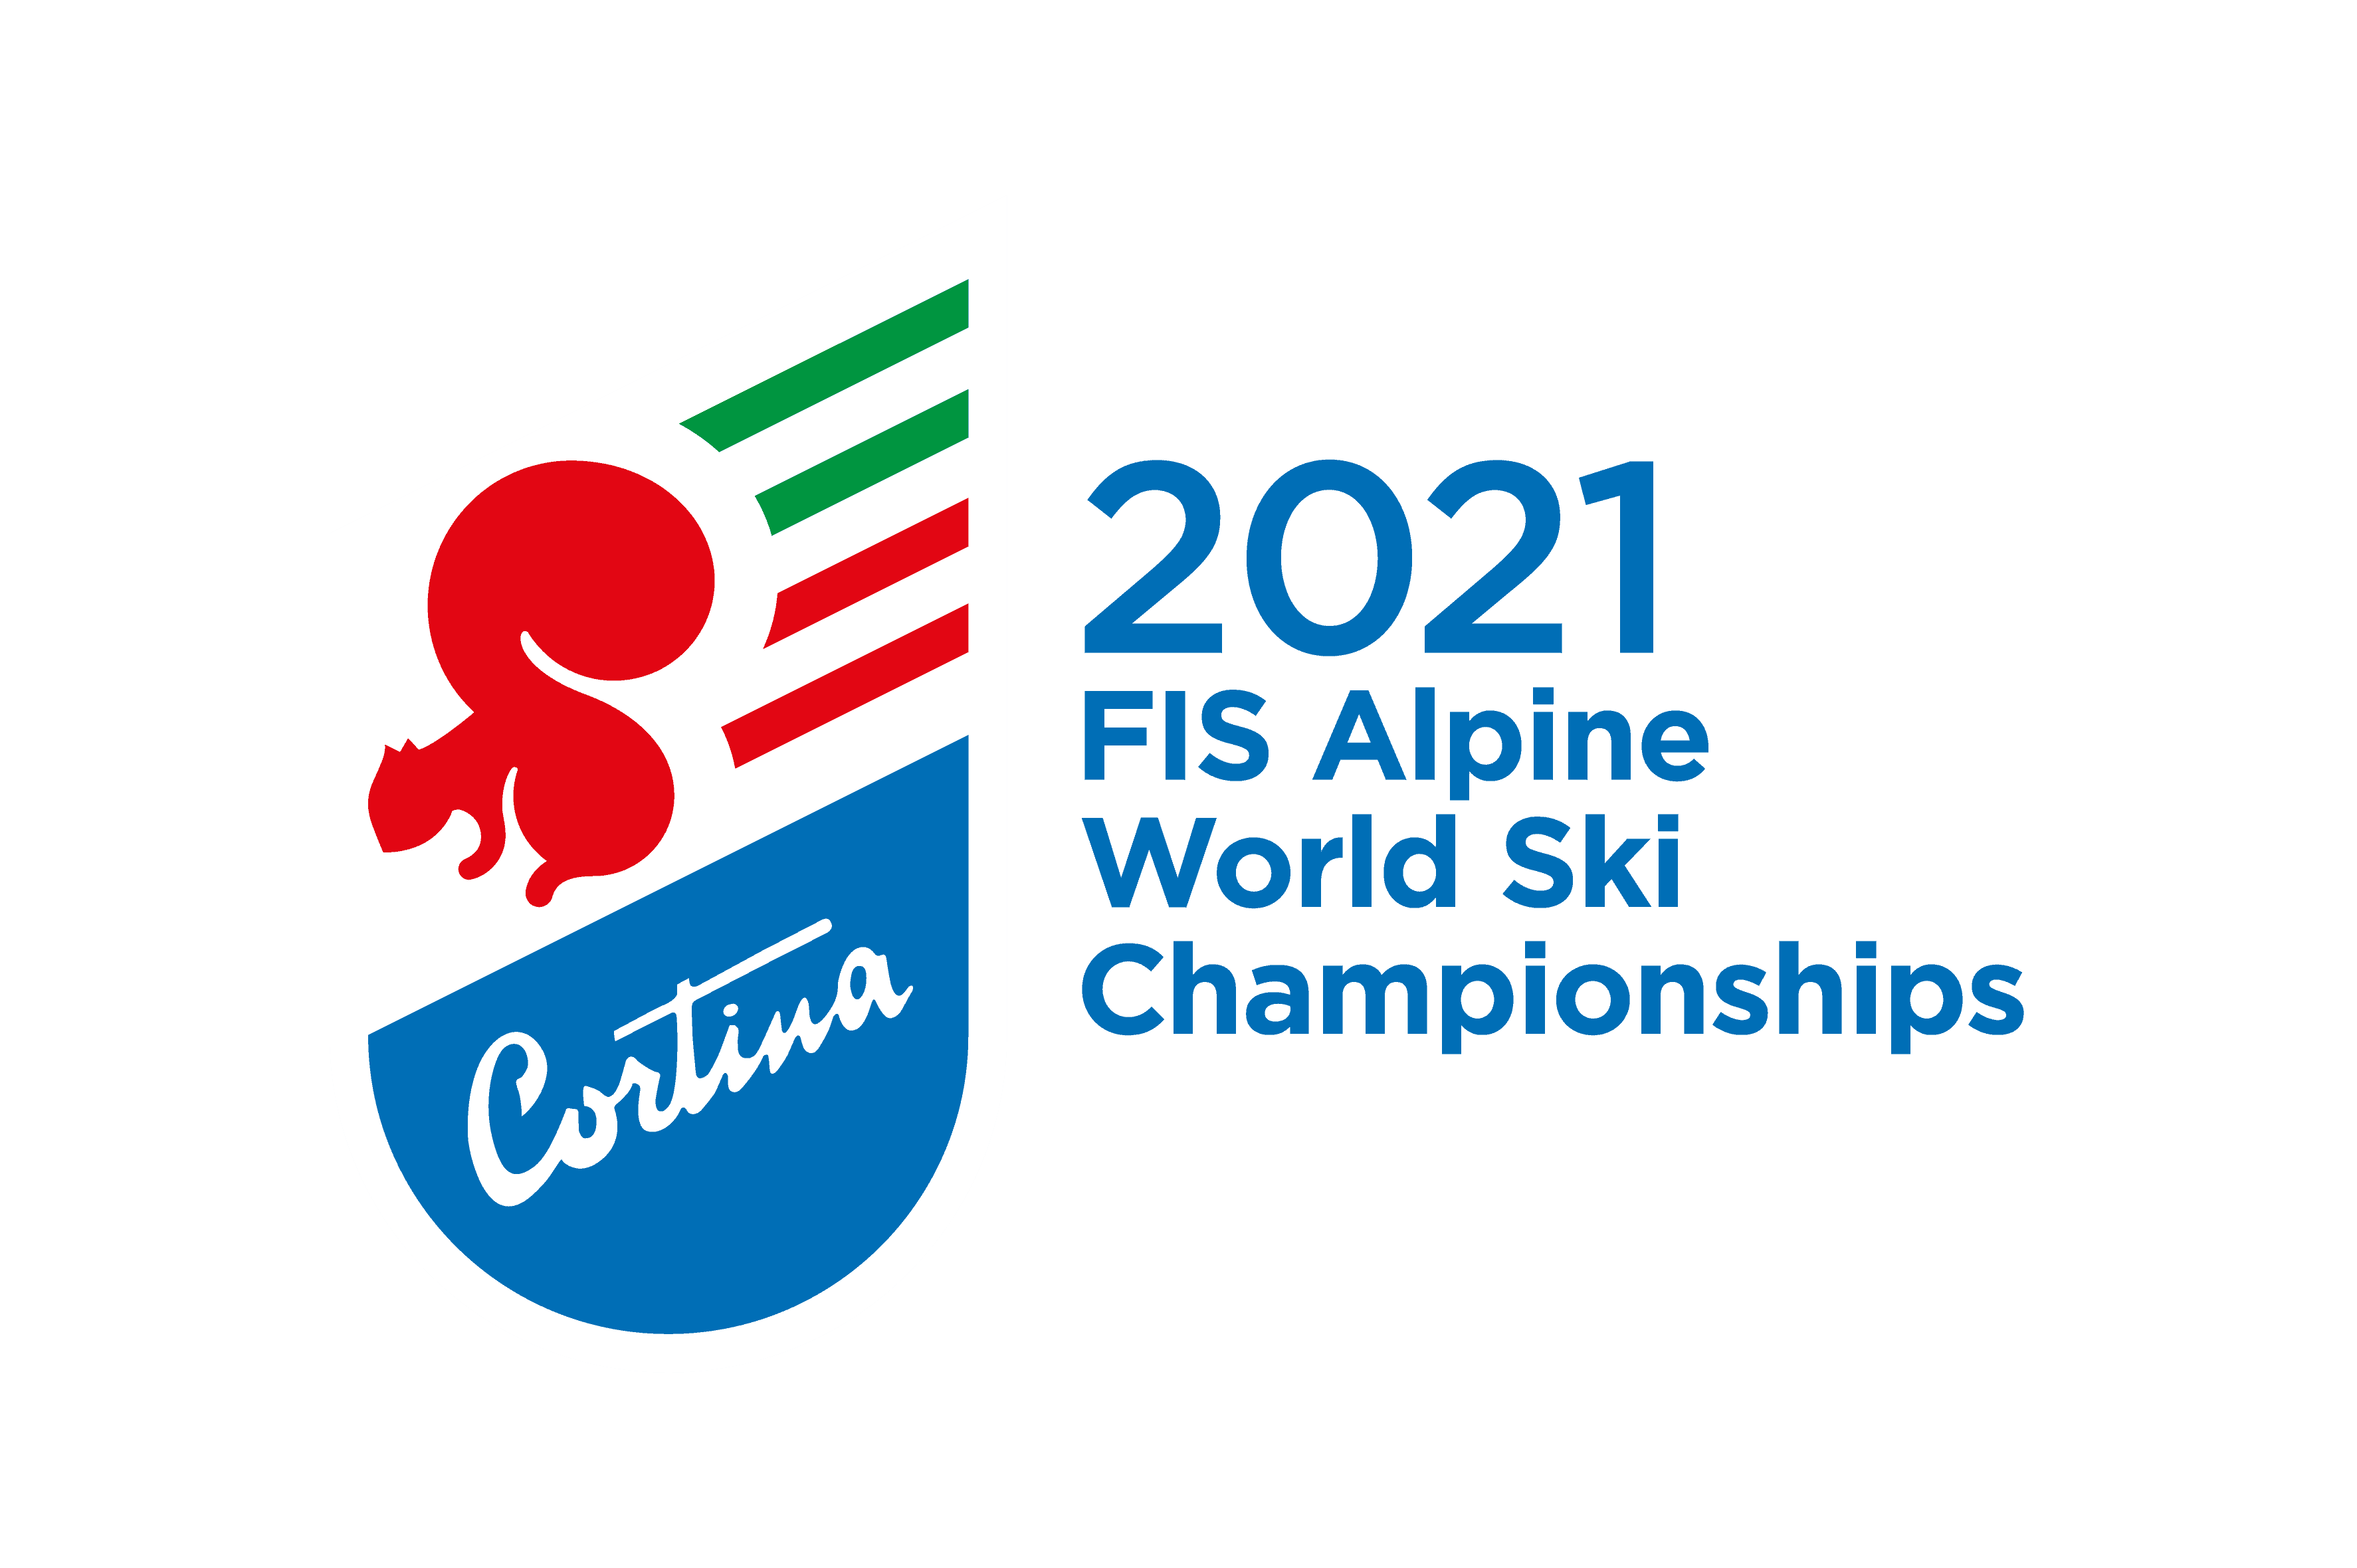 Cortina2021